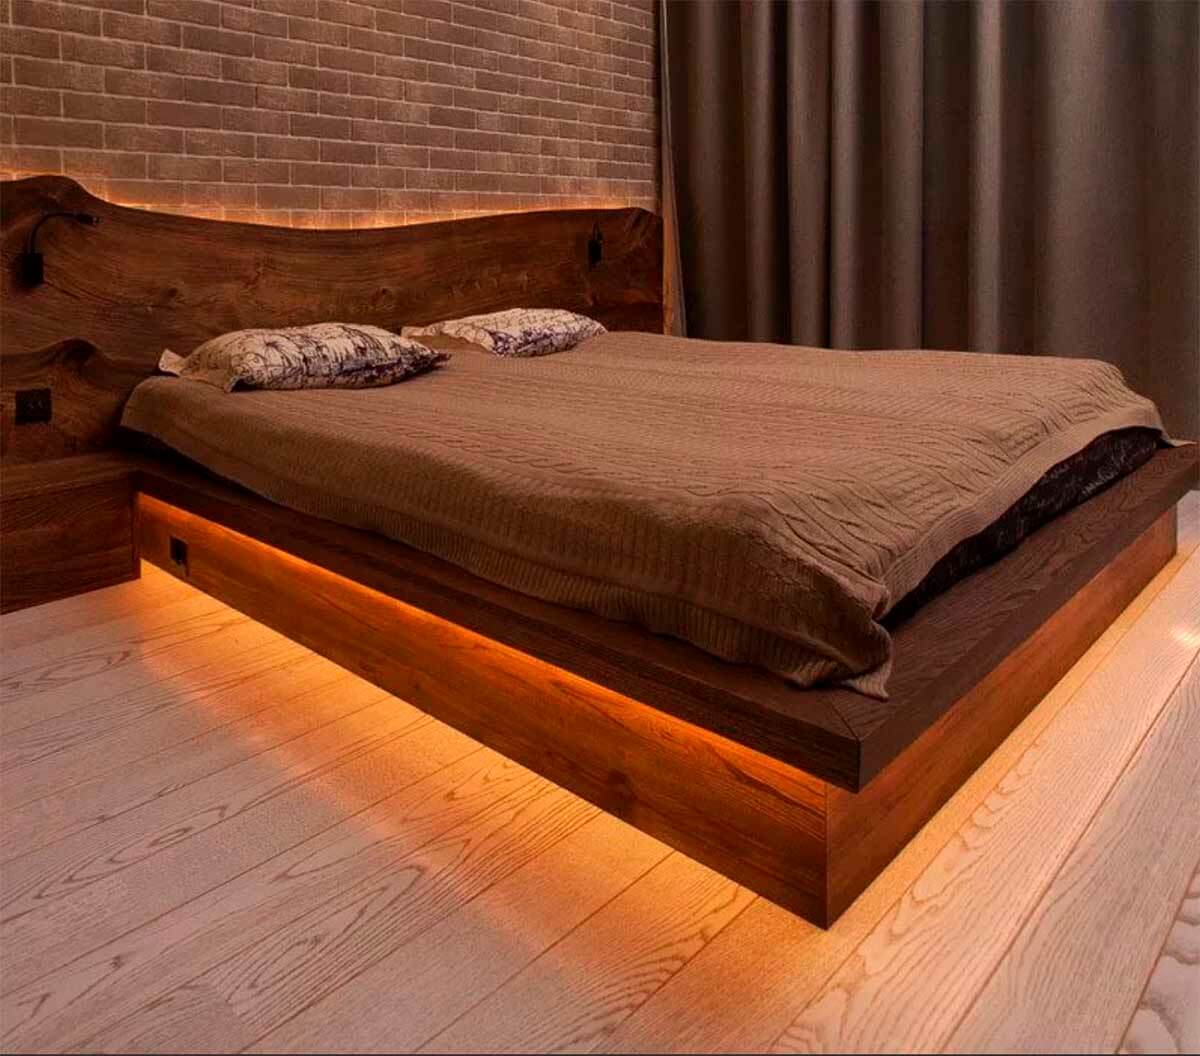 кровать в спальню из массива дерева